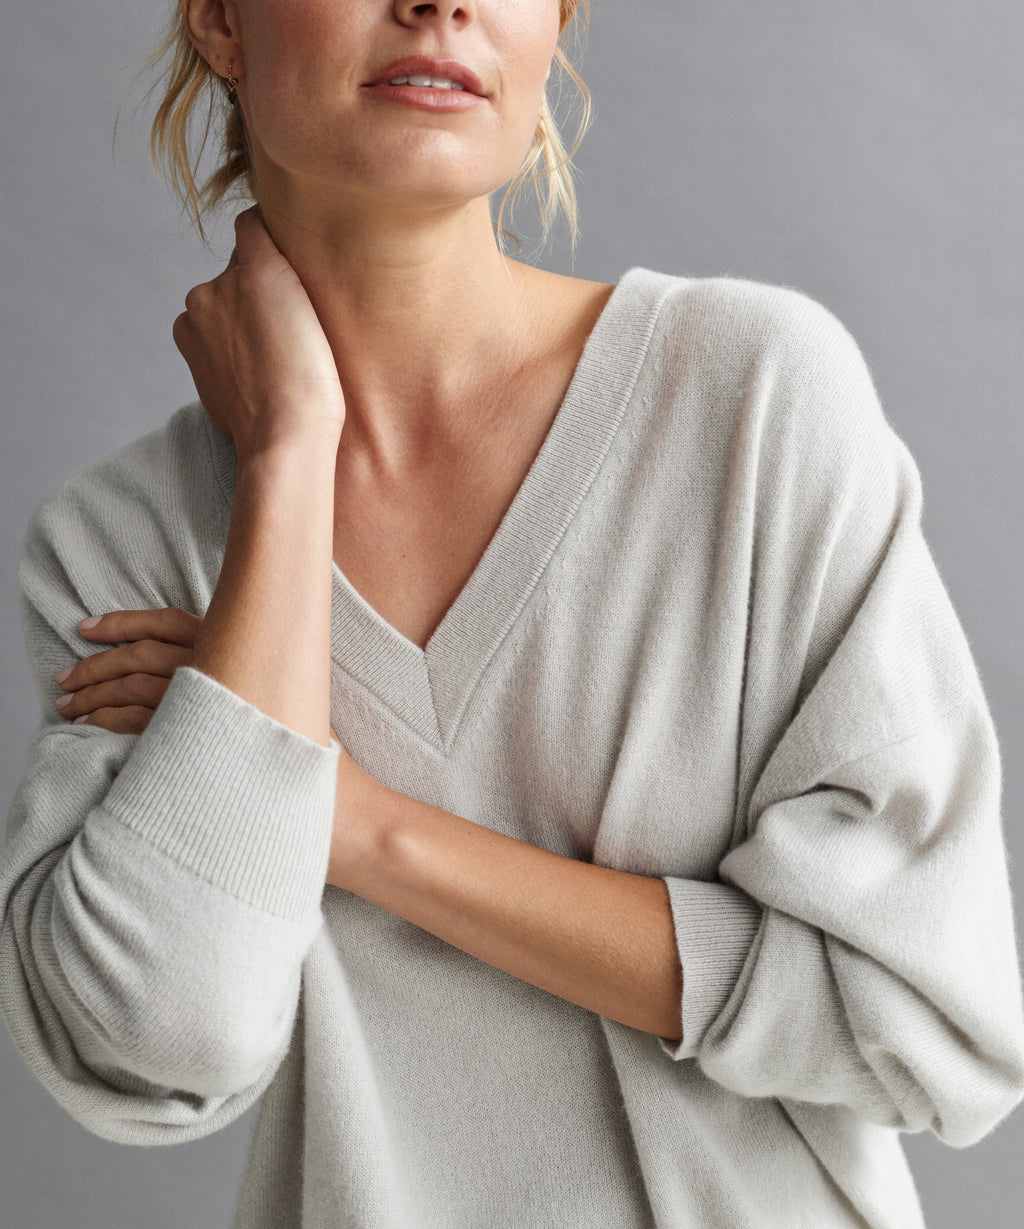 Jenni Kayne Women's Charlie V-Neck Sweater Size Small